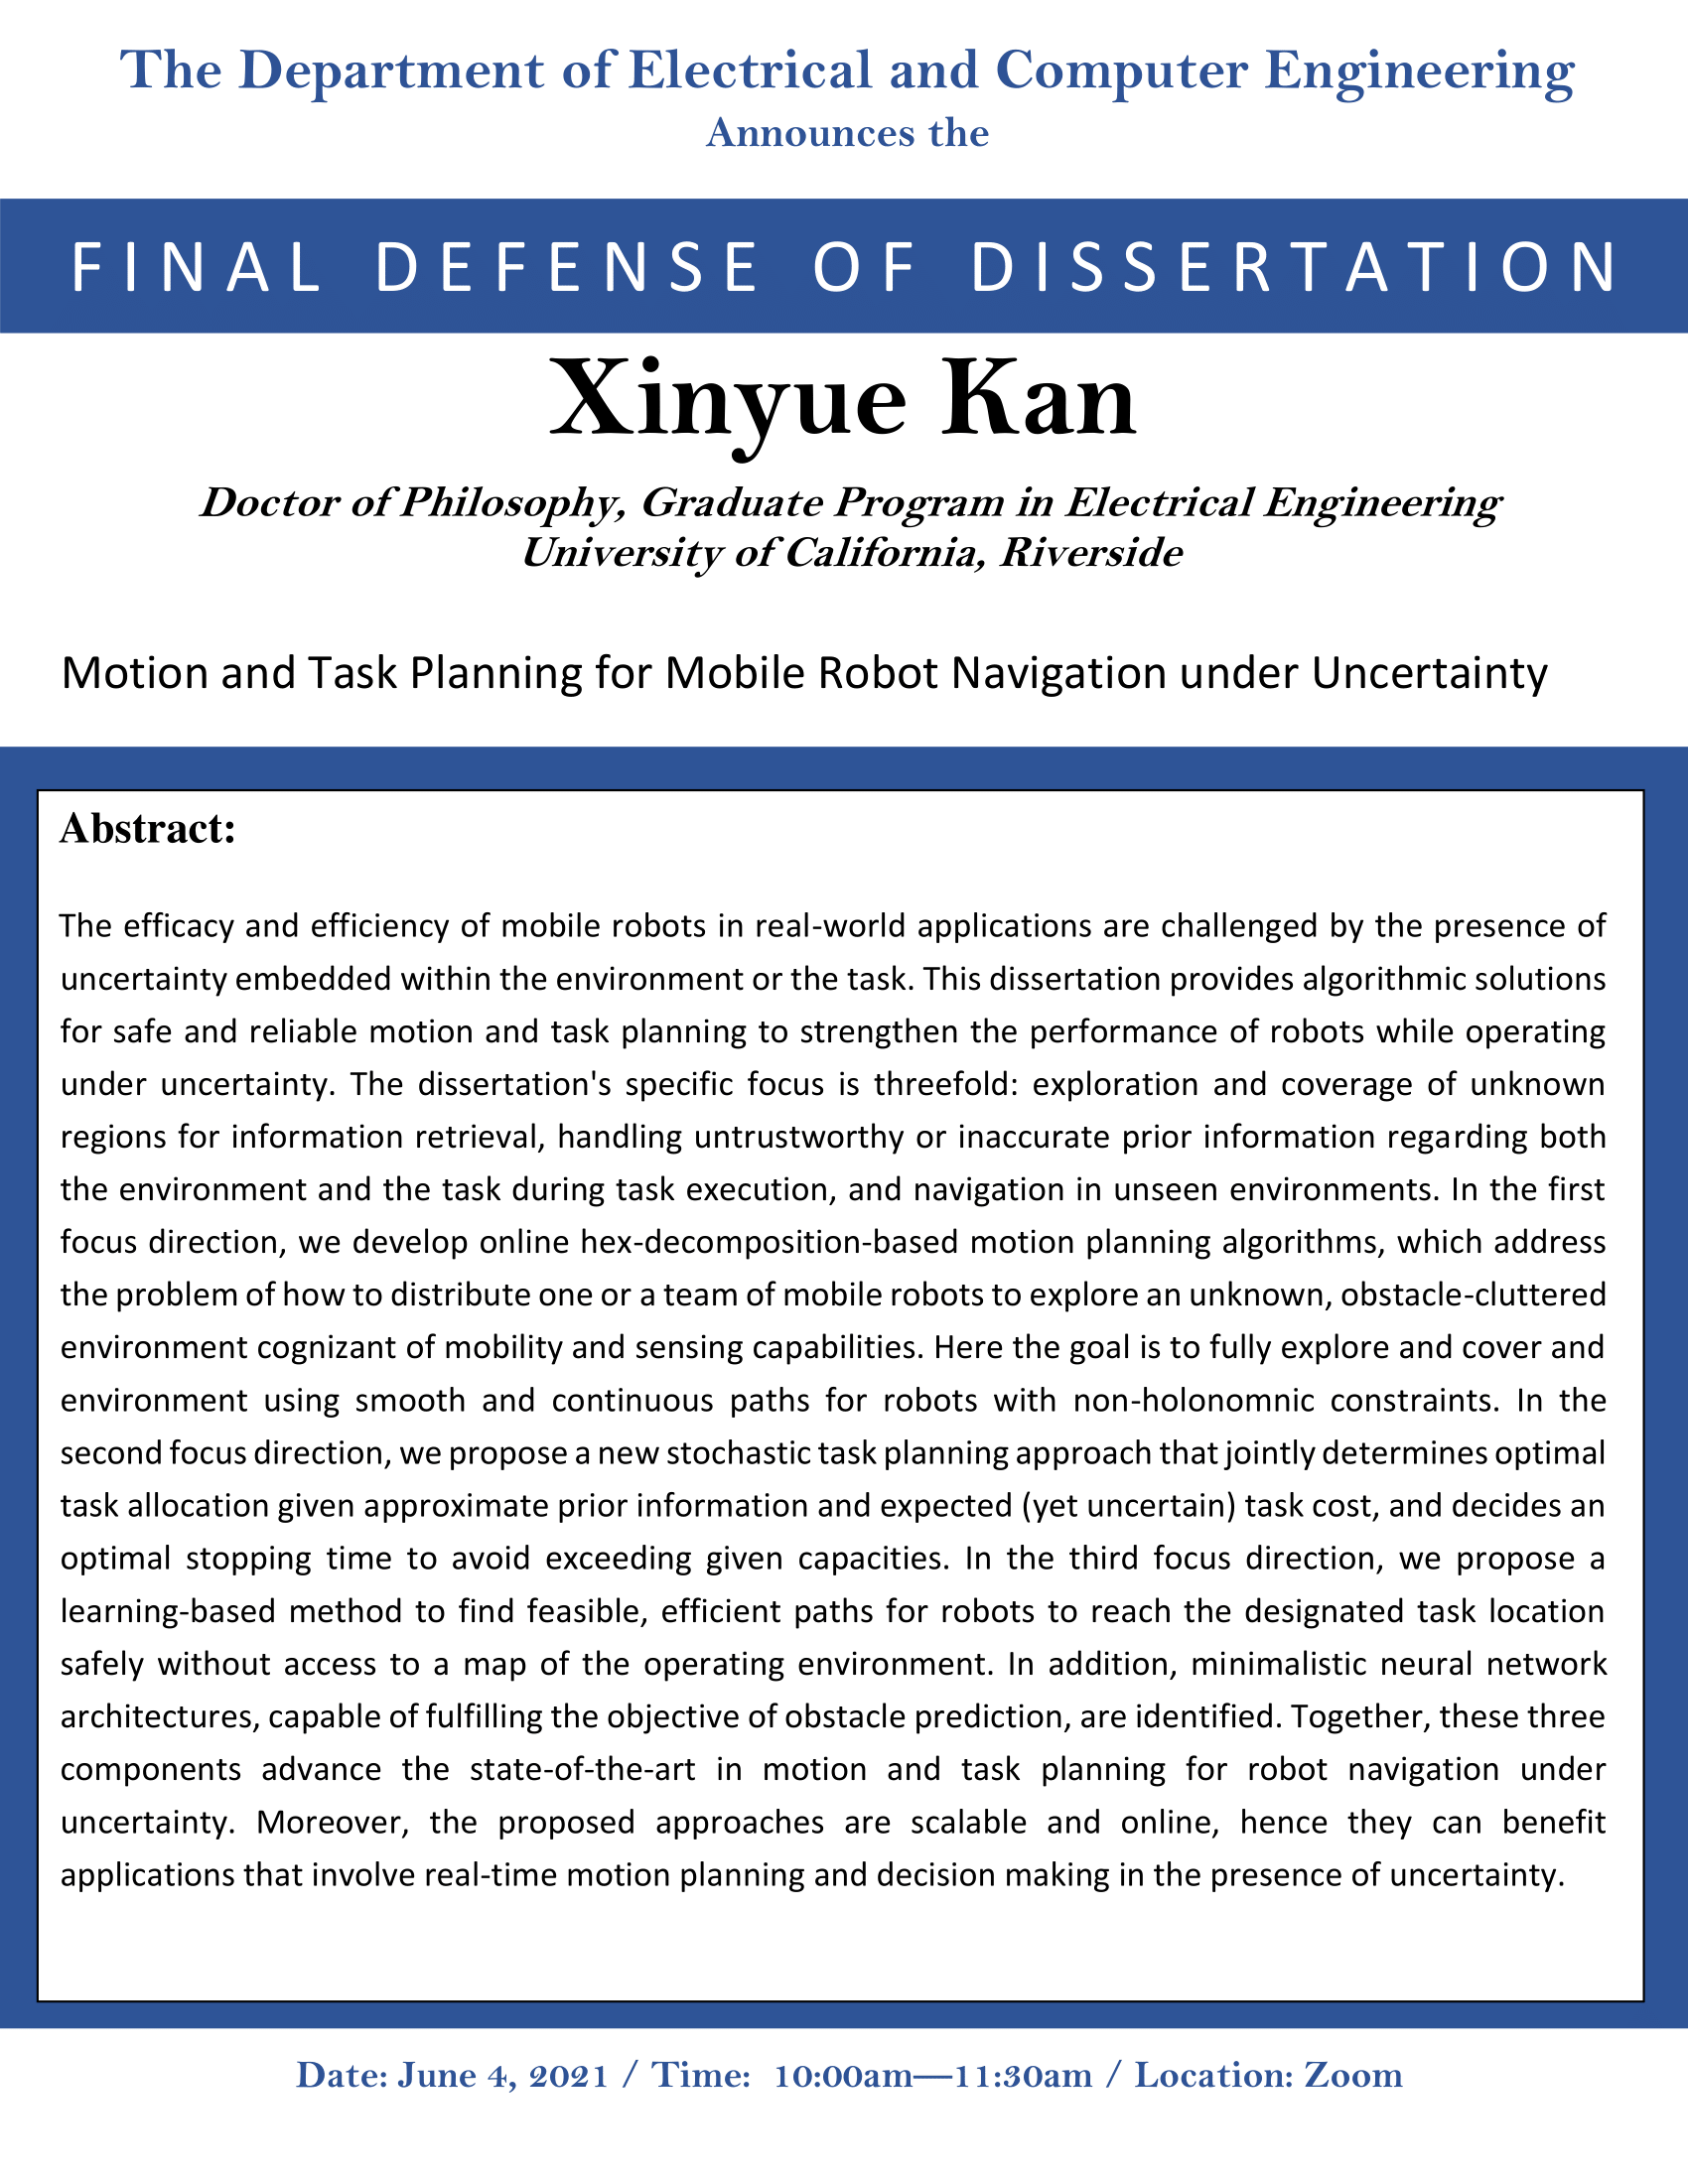 Kan, Xinyue